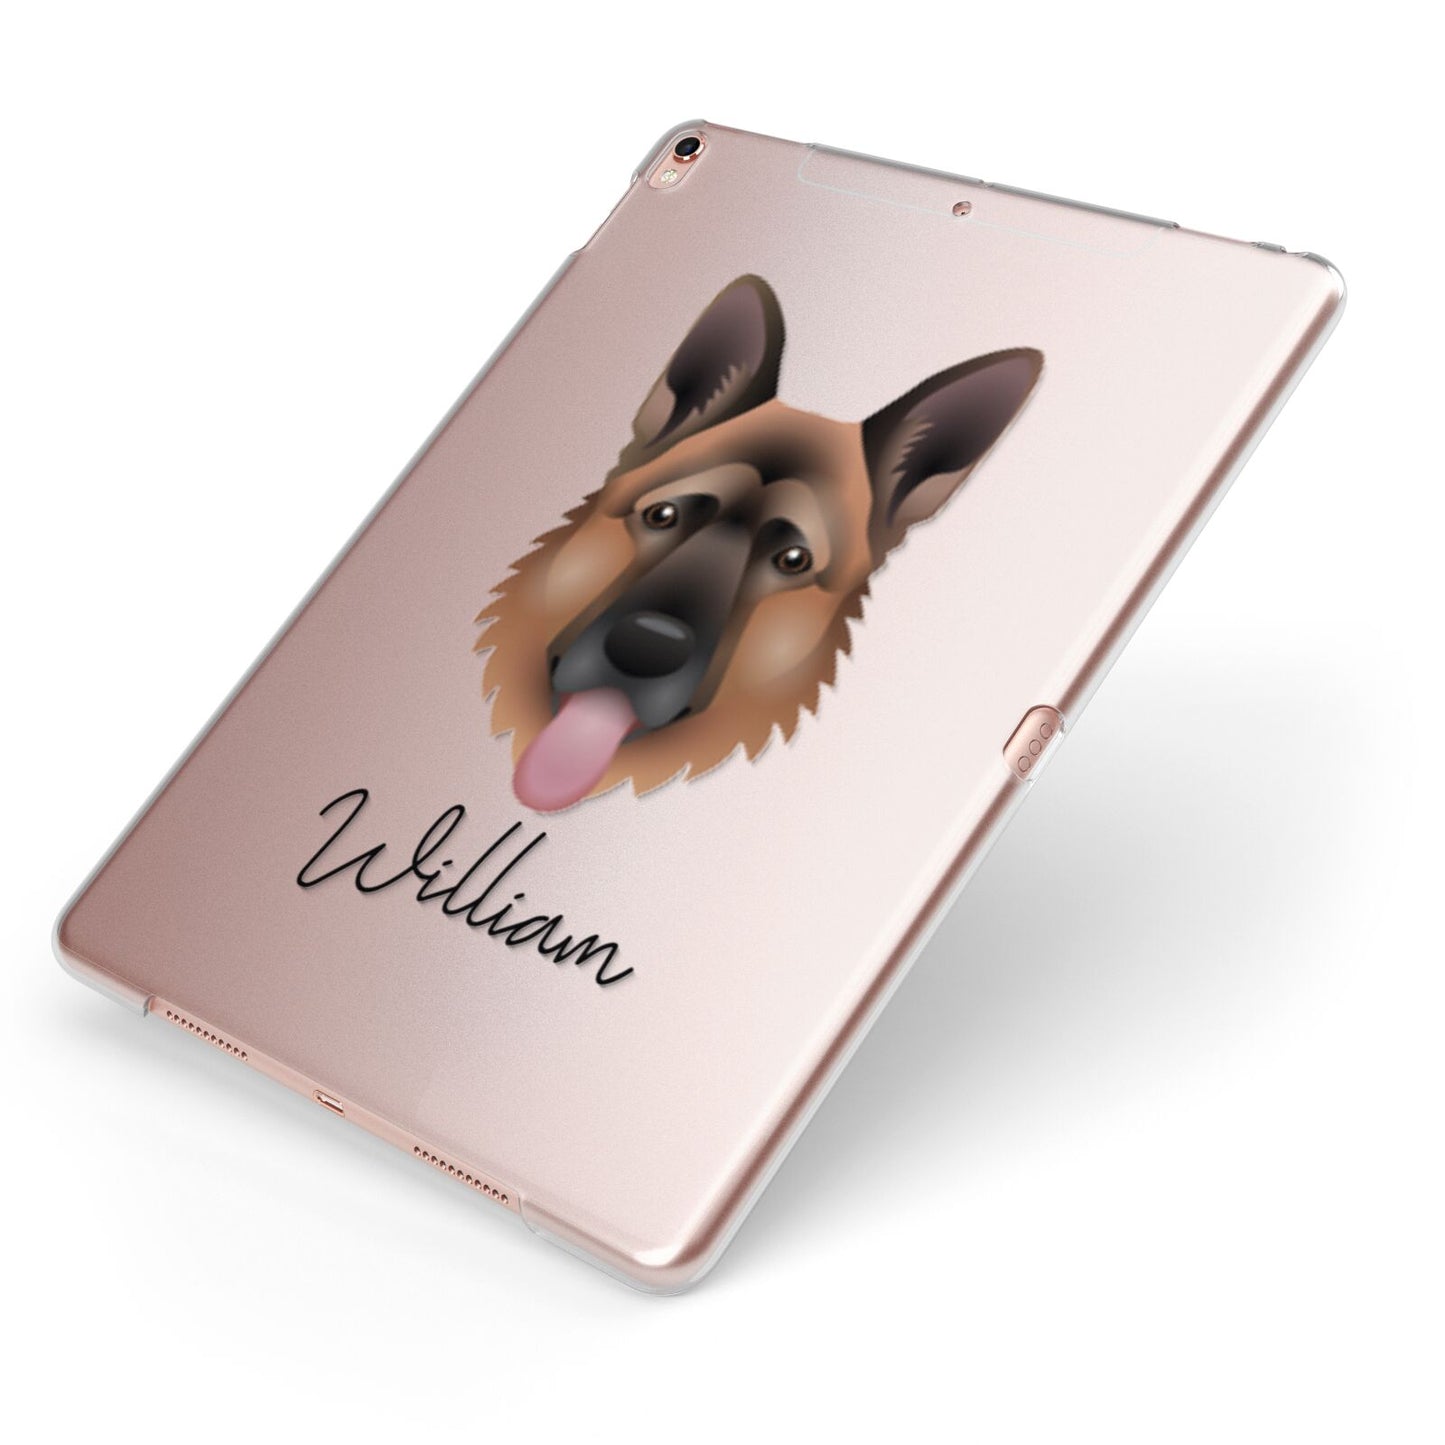 German Shepherd Personalised Apple iPad Case on Rose Gold iPad Side View